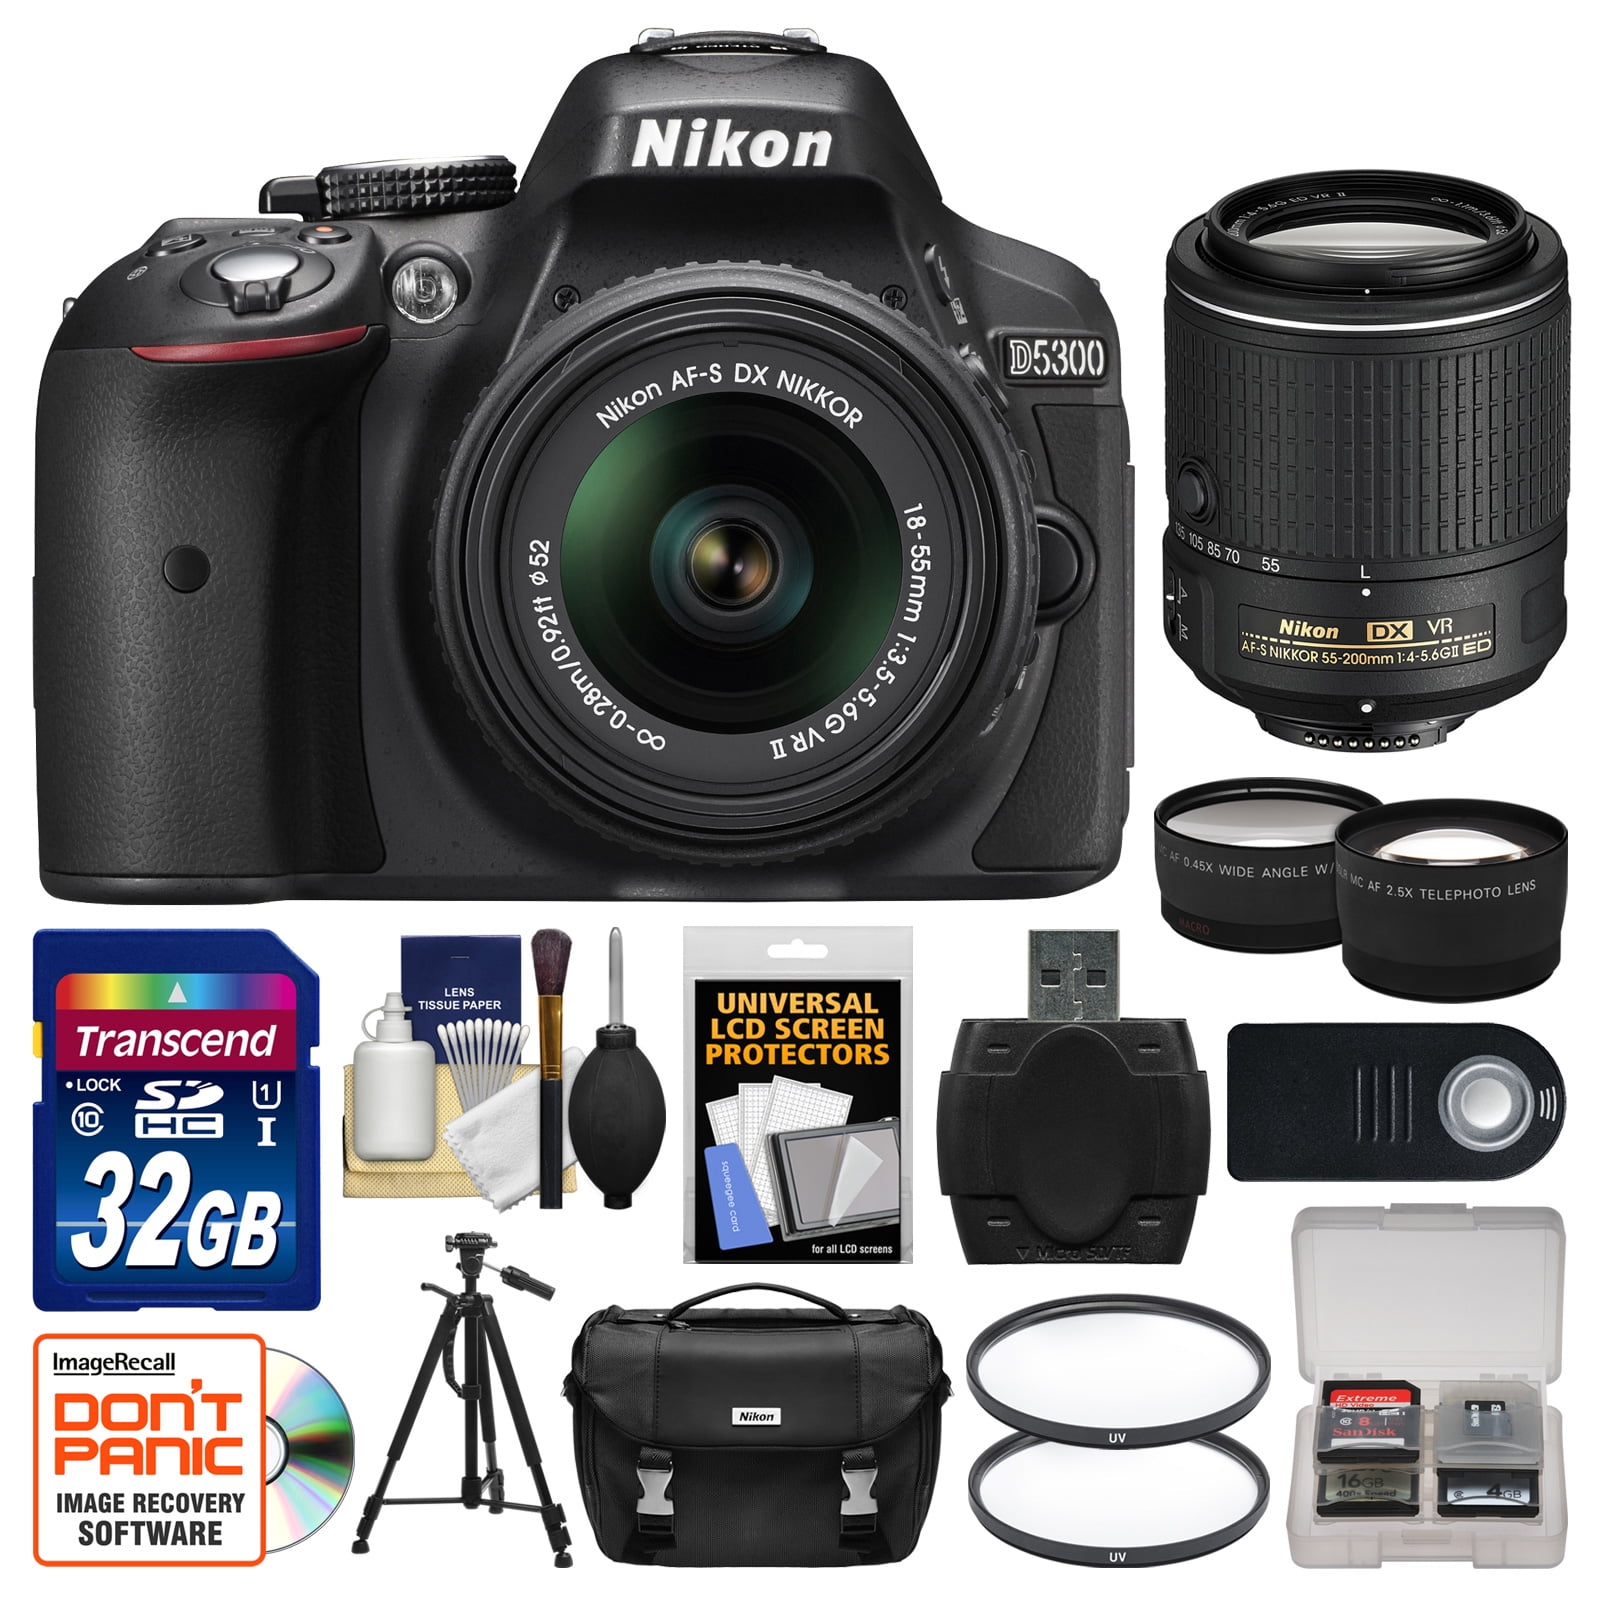 Nikon D5300 Digital SLR Camera & 18-55mm VR DX II AF-S Lens (Black